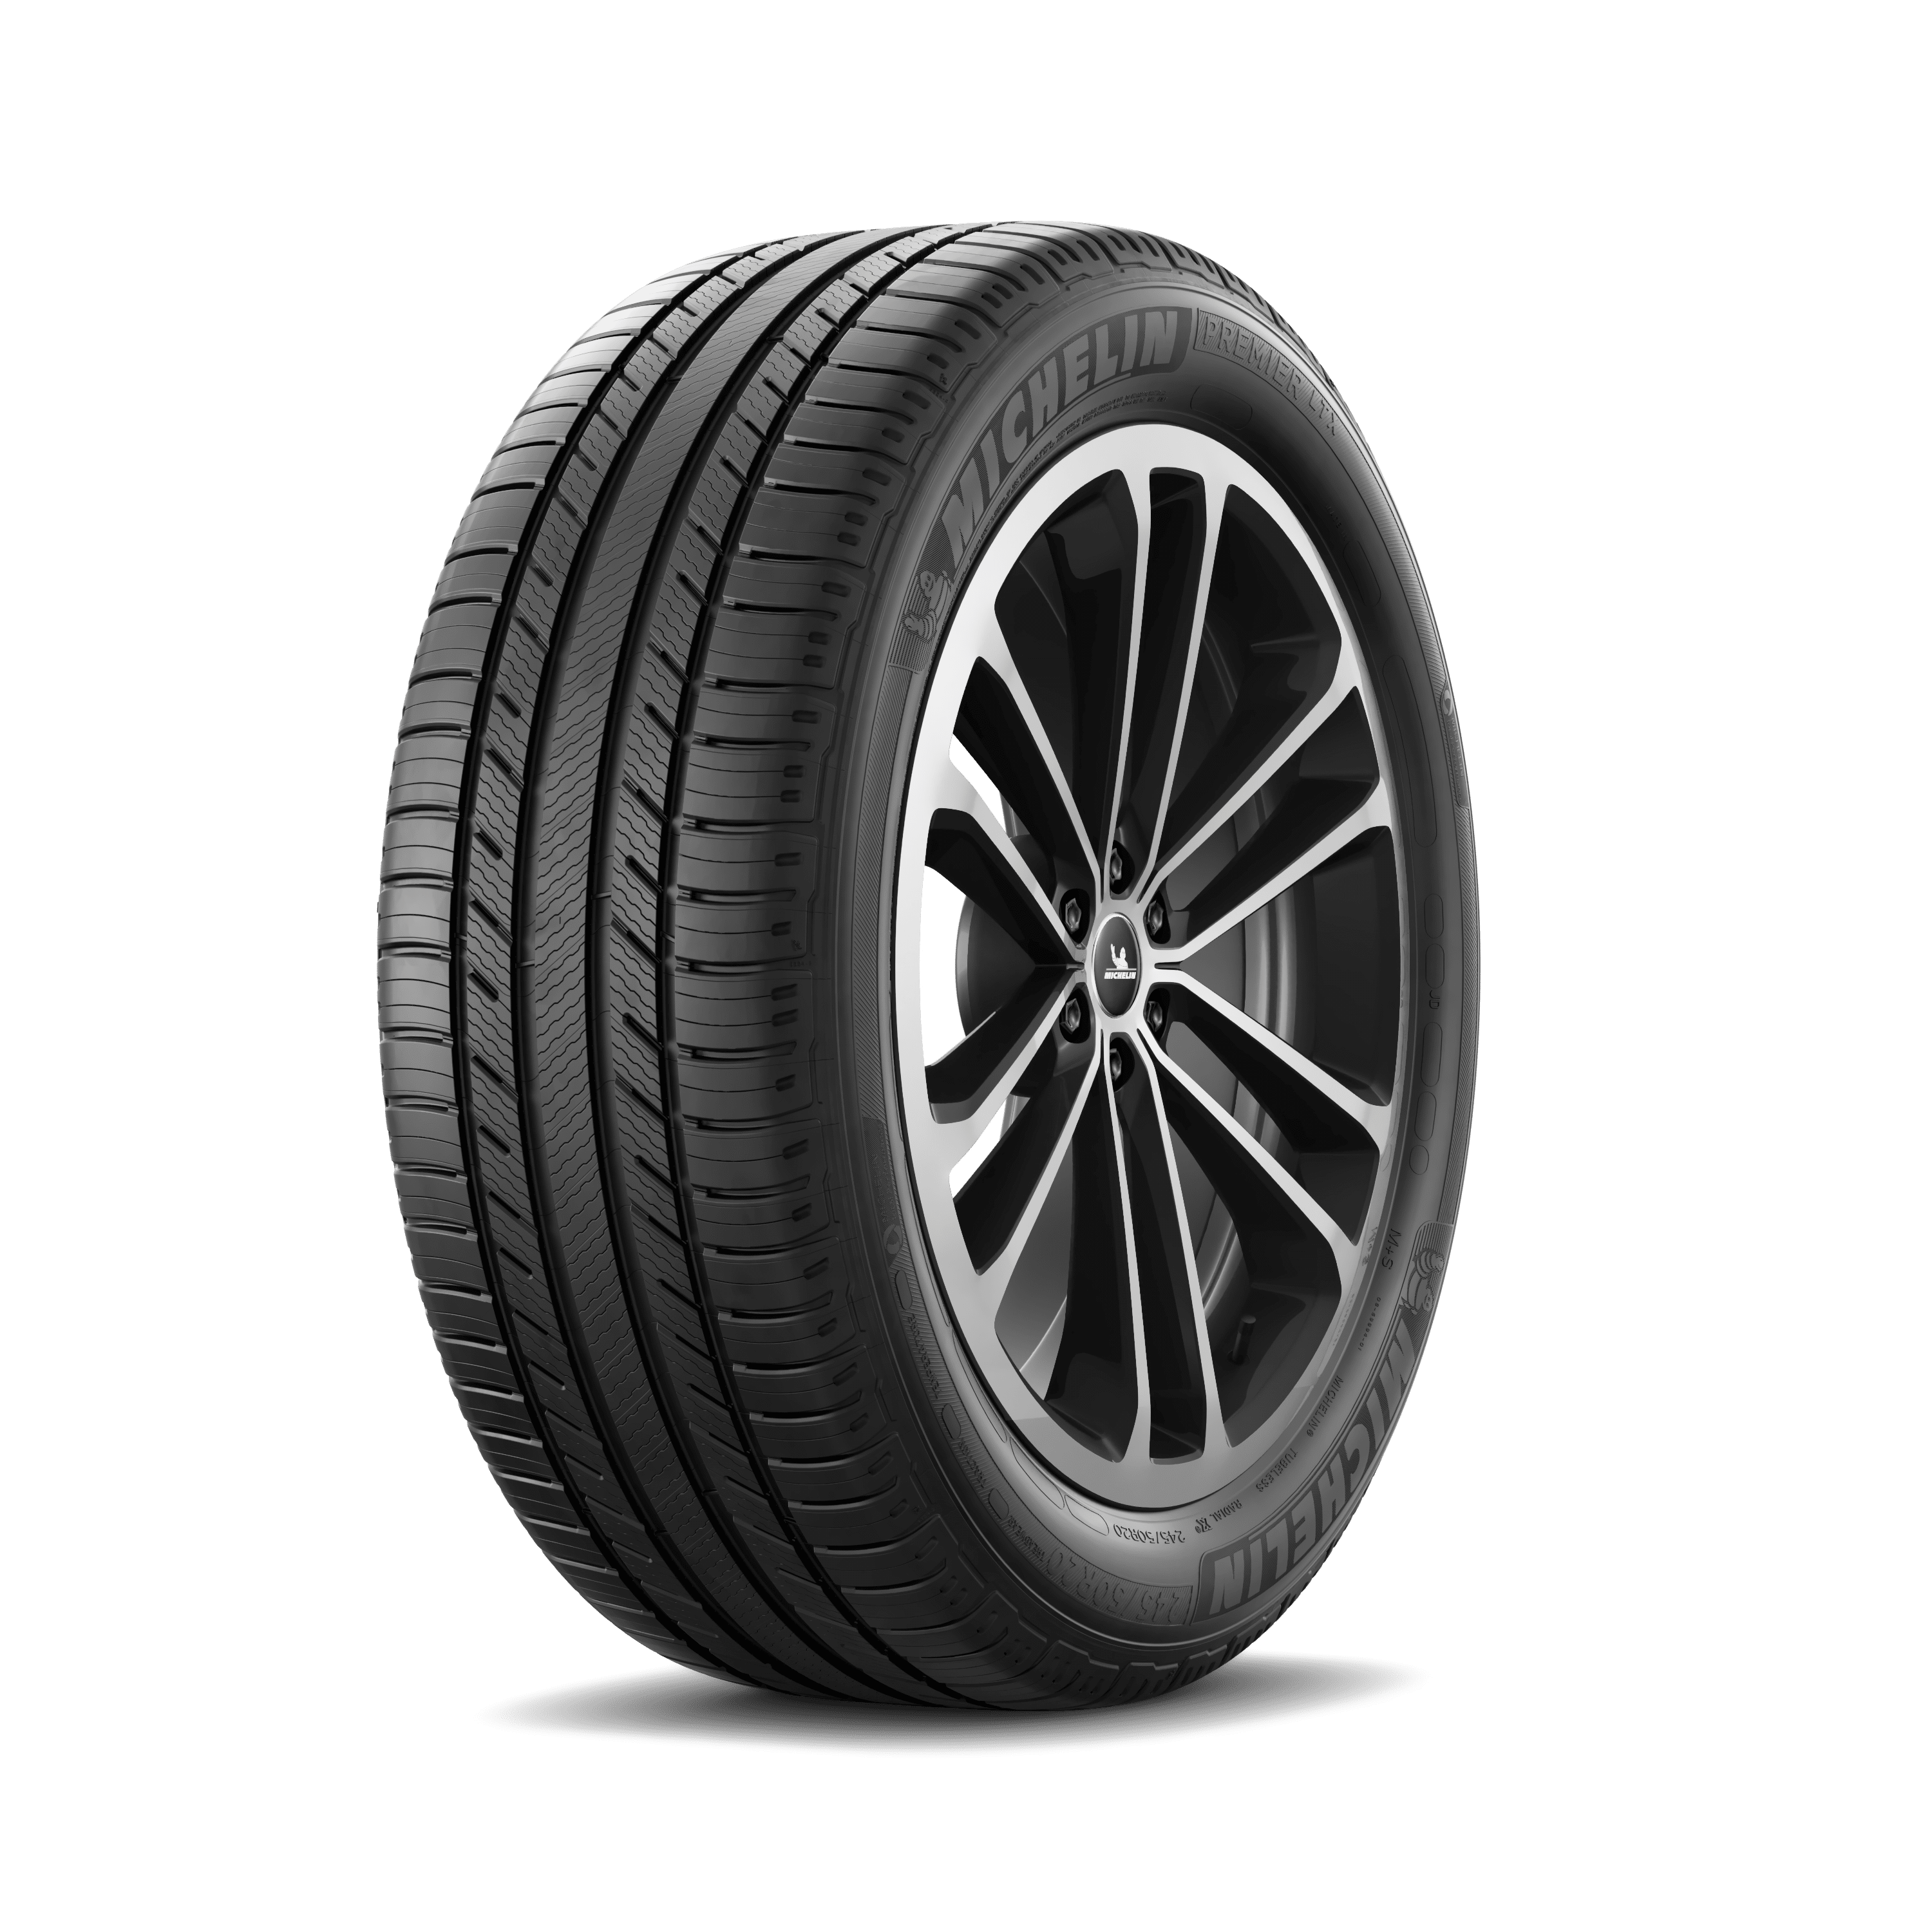 MICHELIN Premier LTX - Car Tire | MICHELIN USA